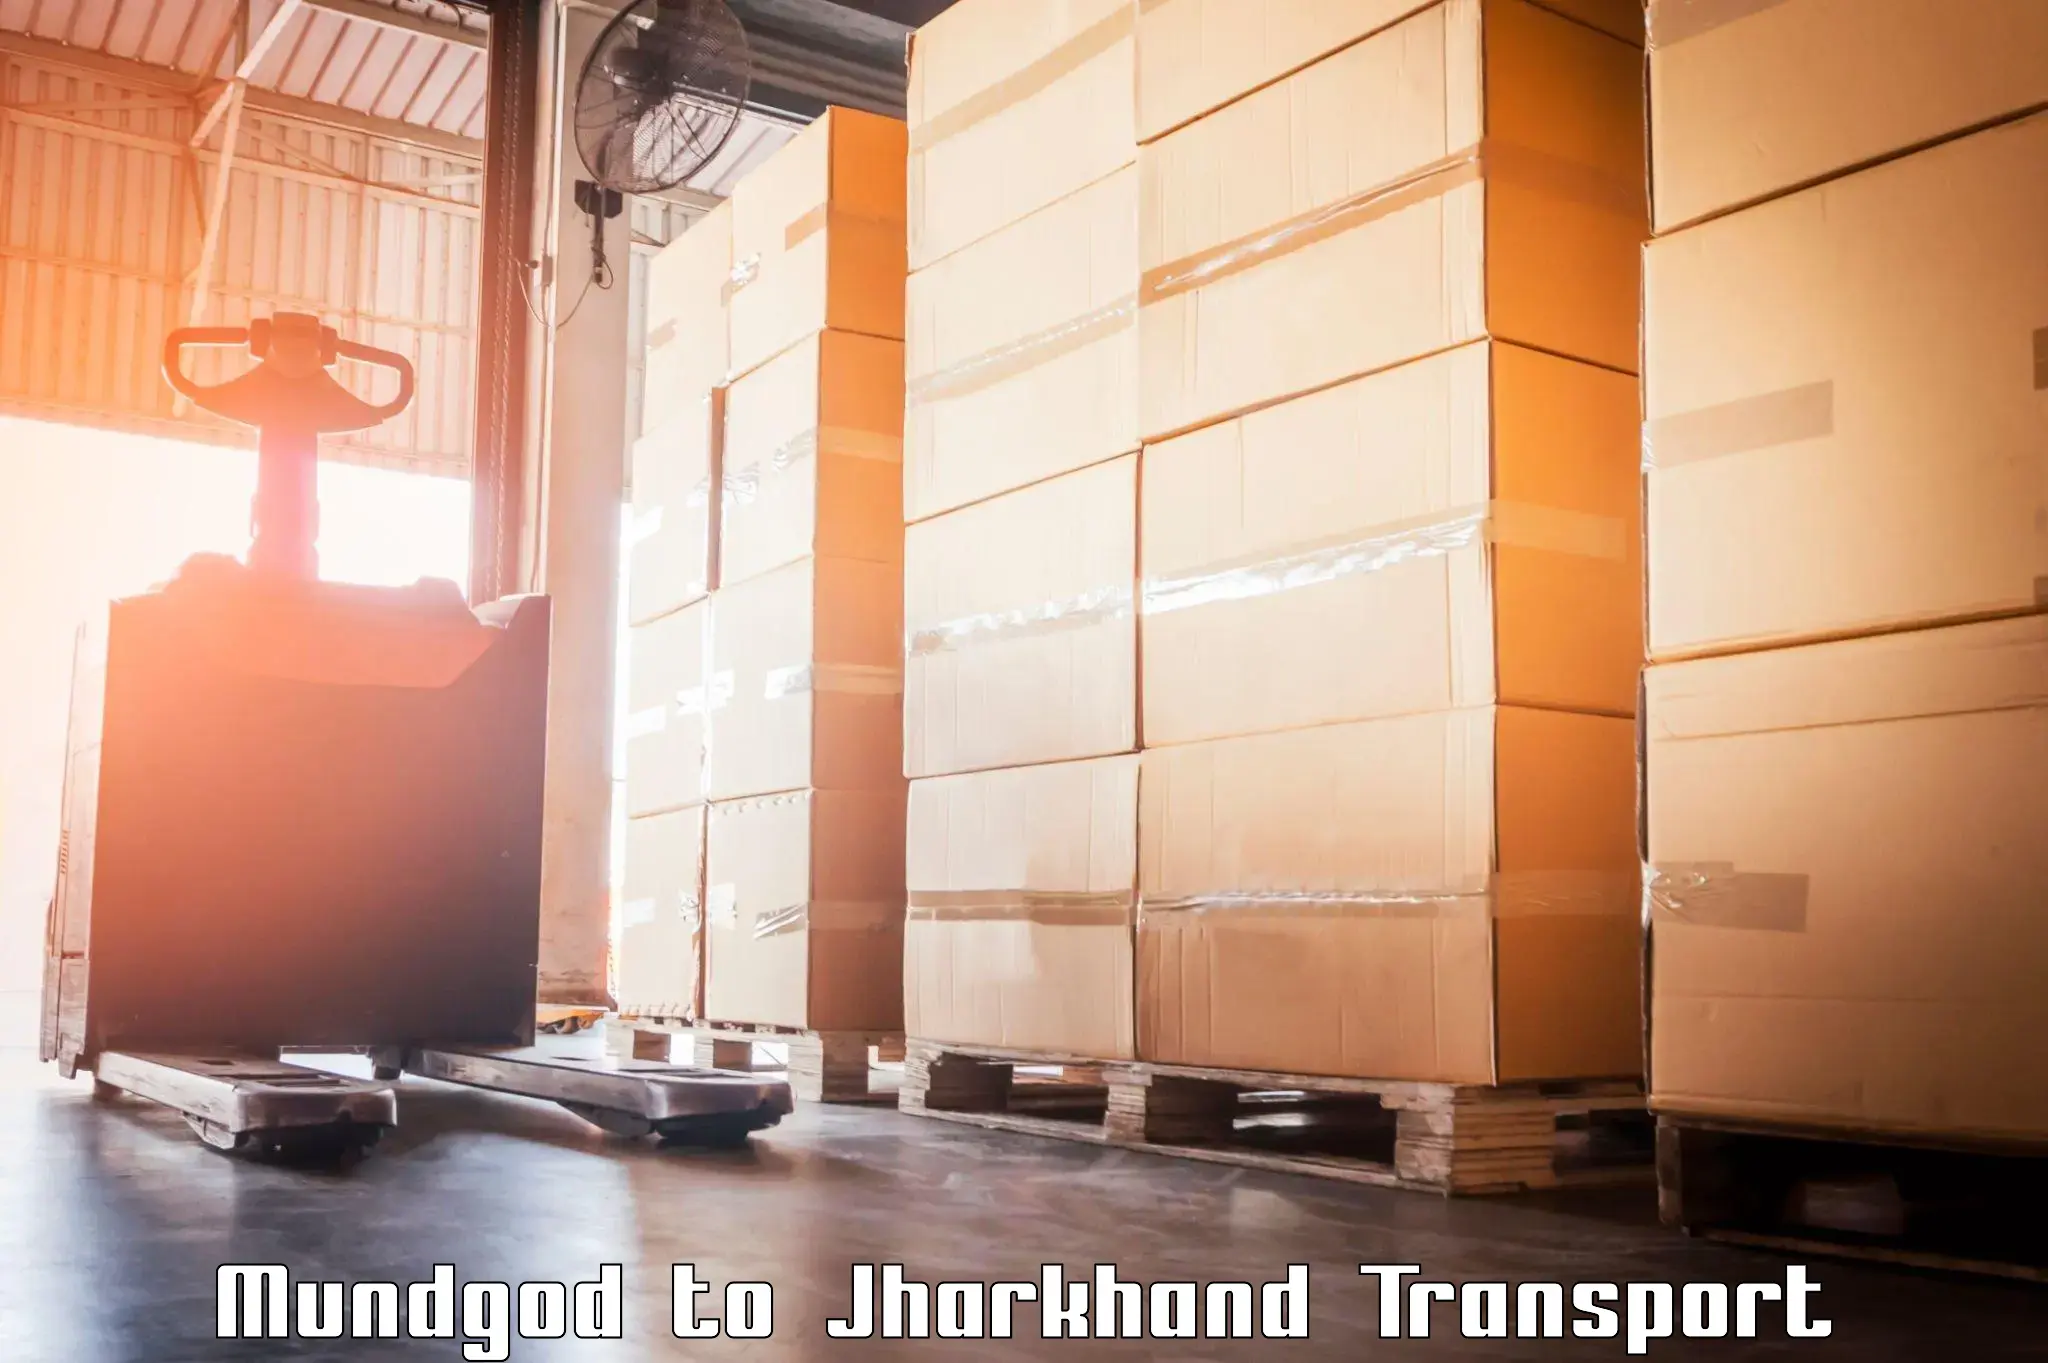 Shipping partner Mundgod to Jharkhand